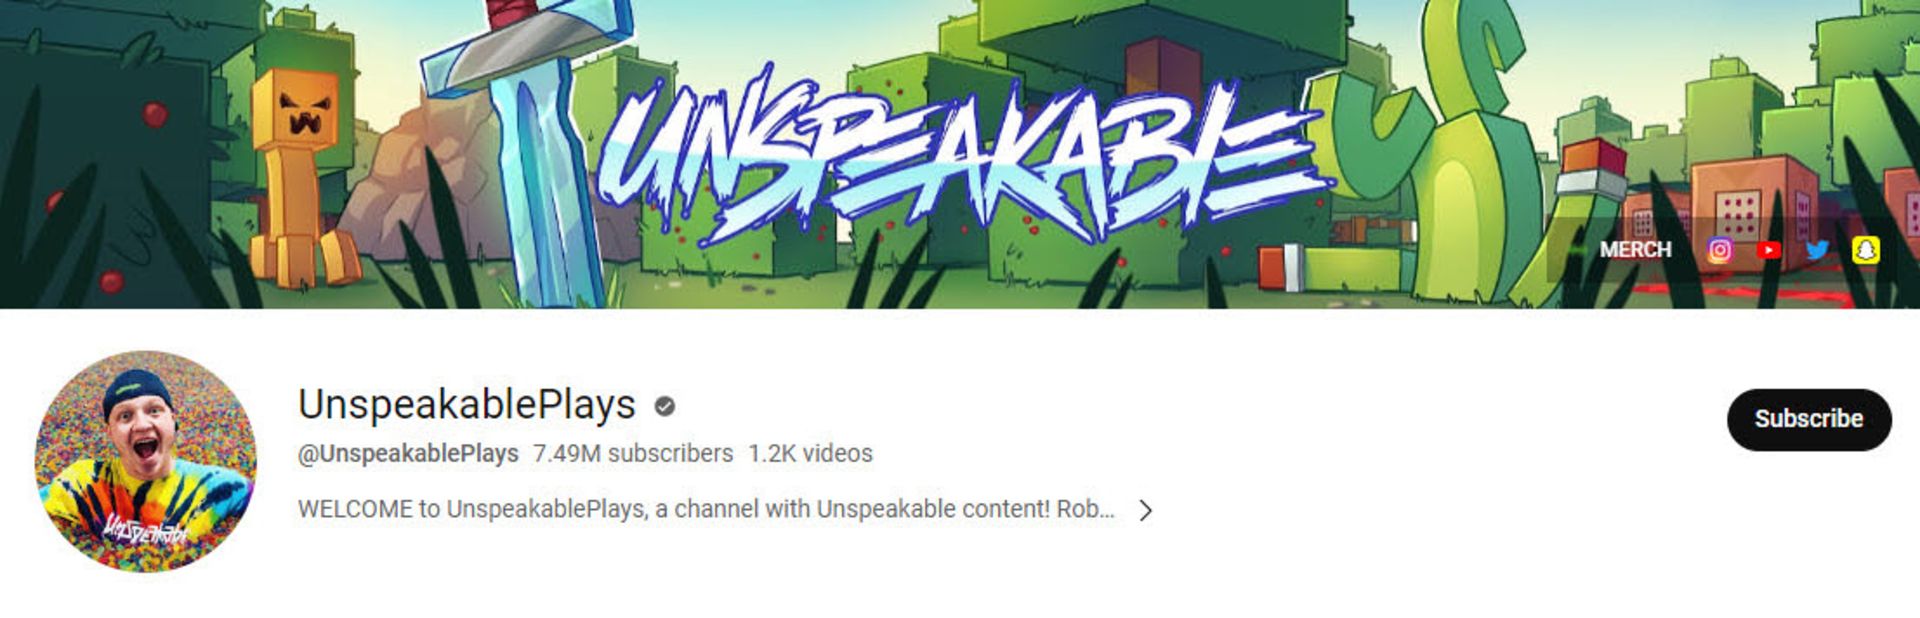 کانال یوتیوب Unspeakable